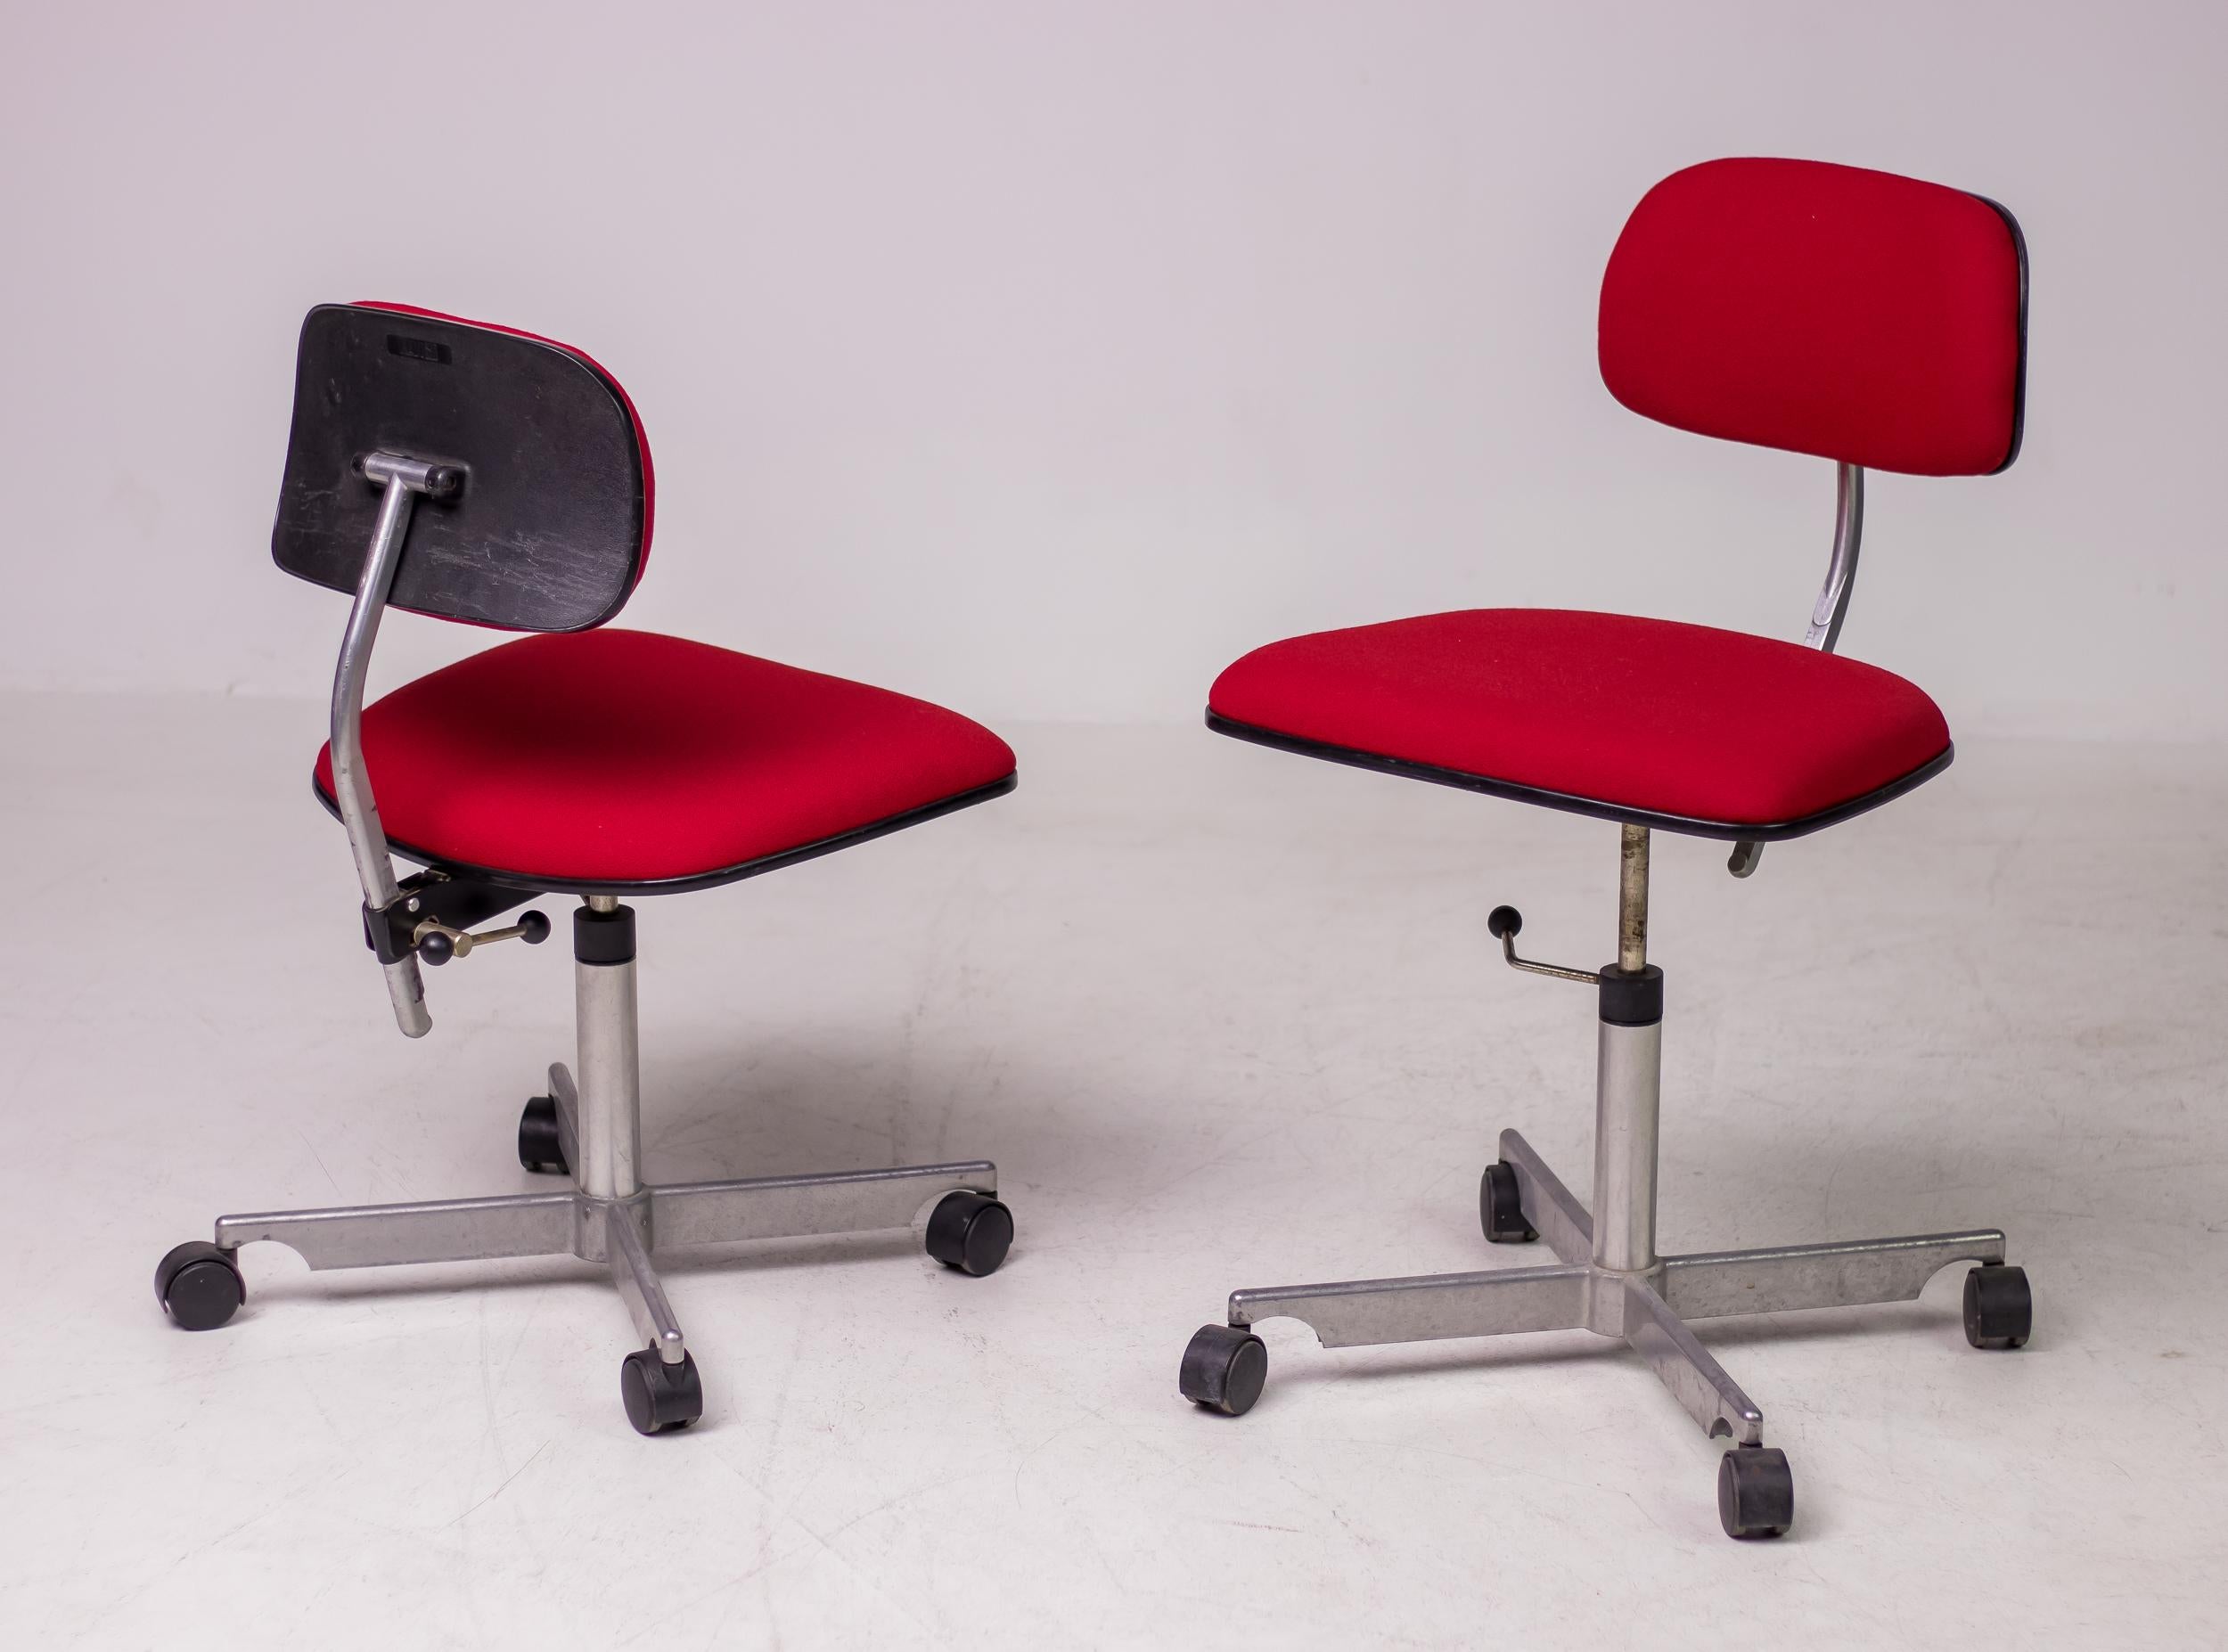 La silla de trabajo Kevi, un icono del diseño, ofrece altura regulable, respaldo de ángulo regulable y altura de asiento regulable. Sorprendentemente cómoda, la silla Kevi es una de las favoritas de arquitectos y diseñadores por su diseño robusto,